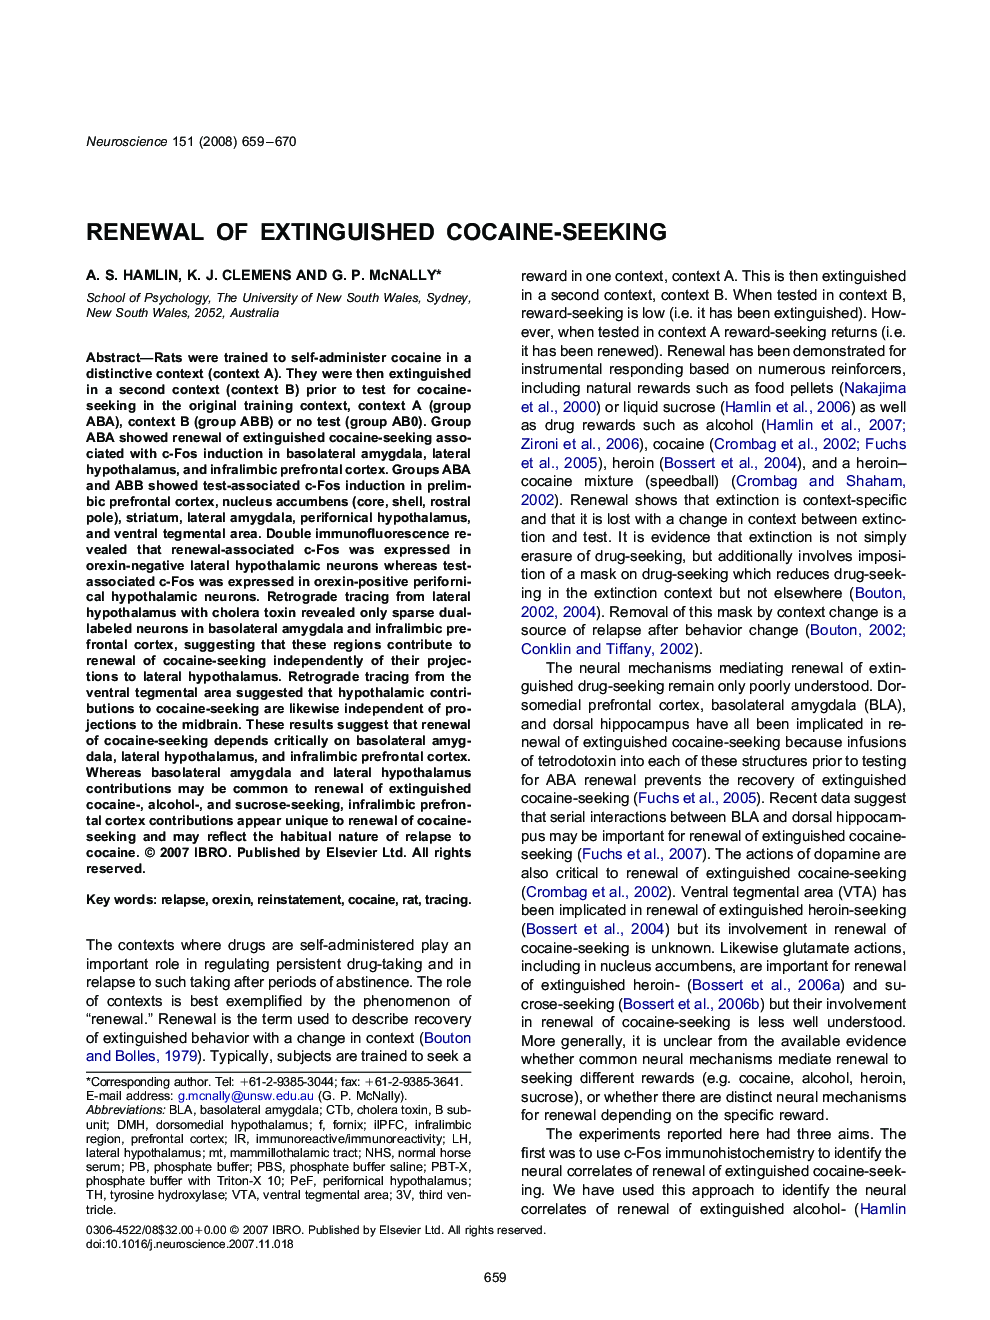 Renewal of extinguished cocaine-seeking